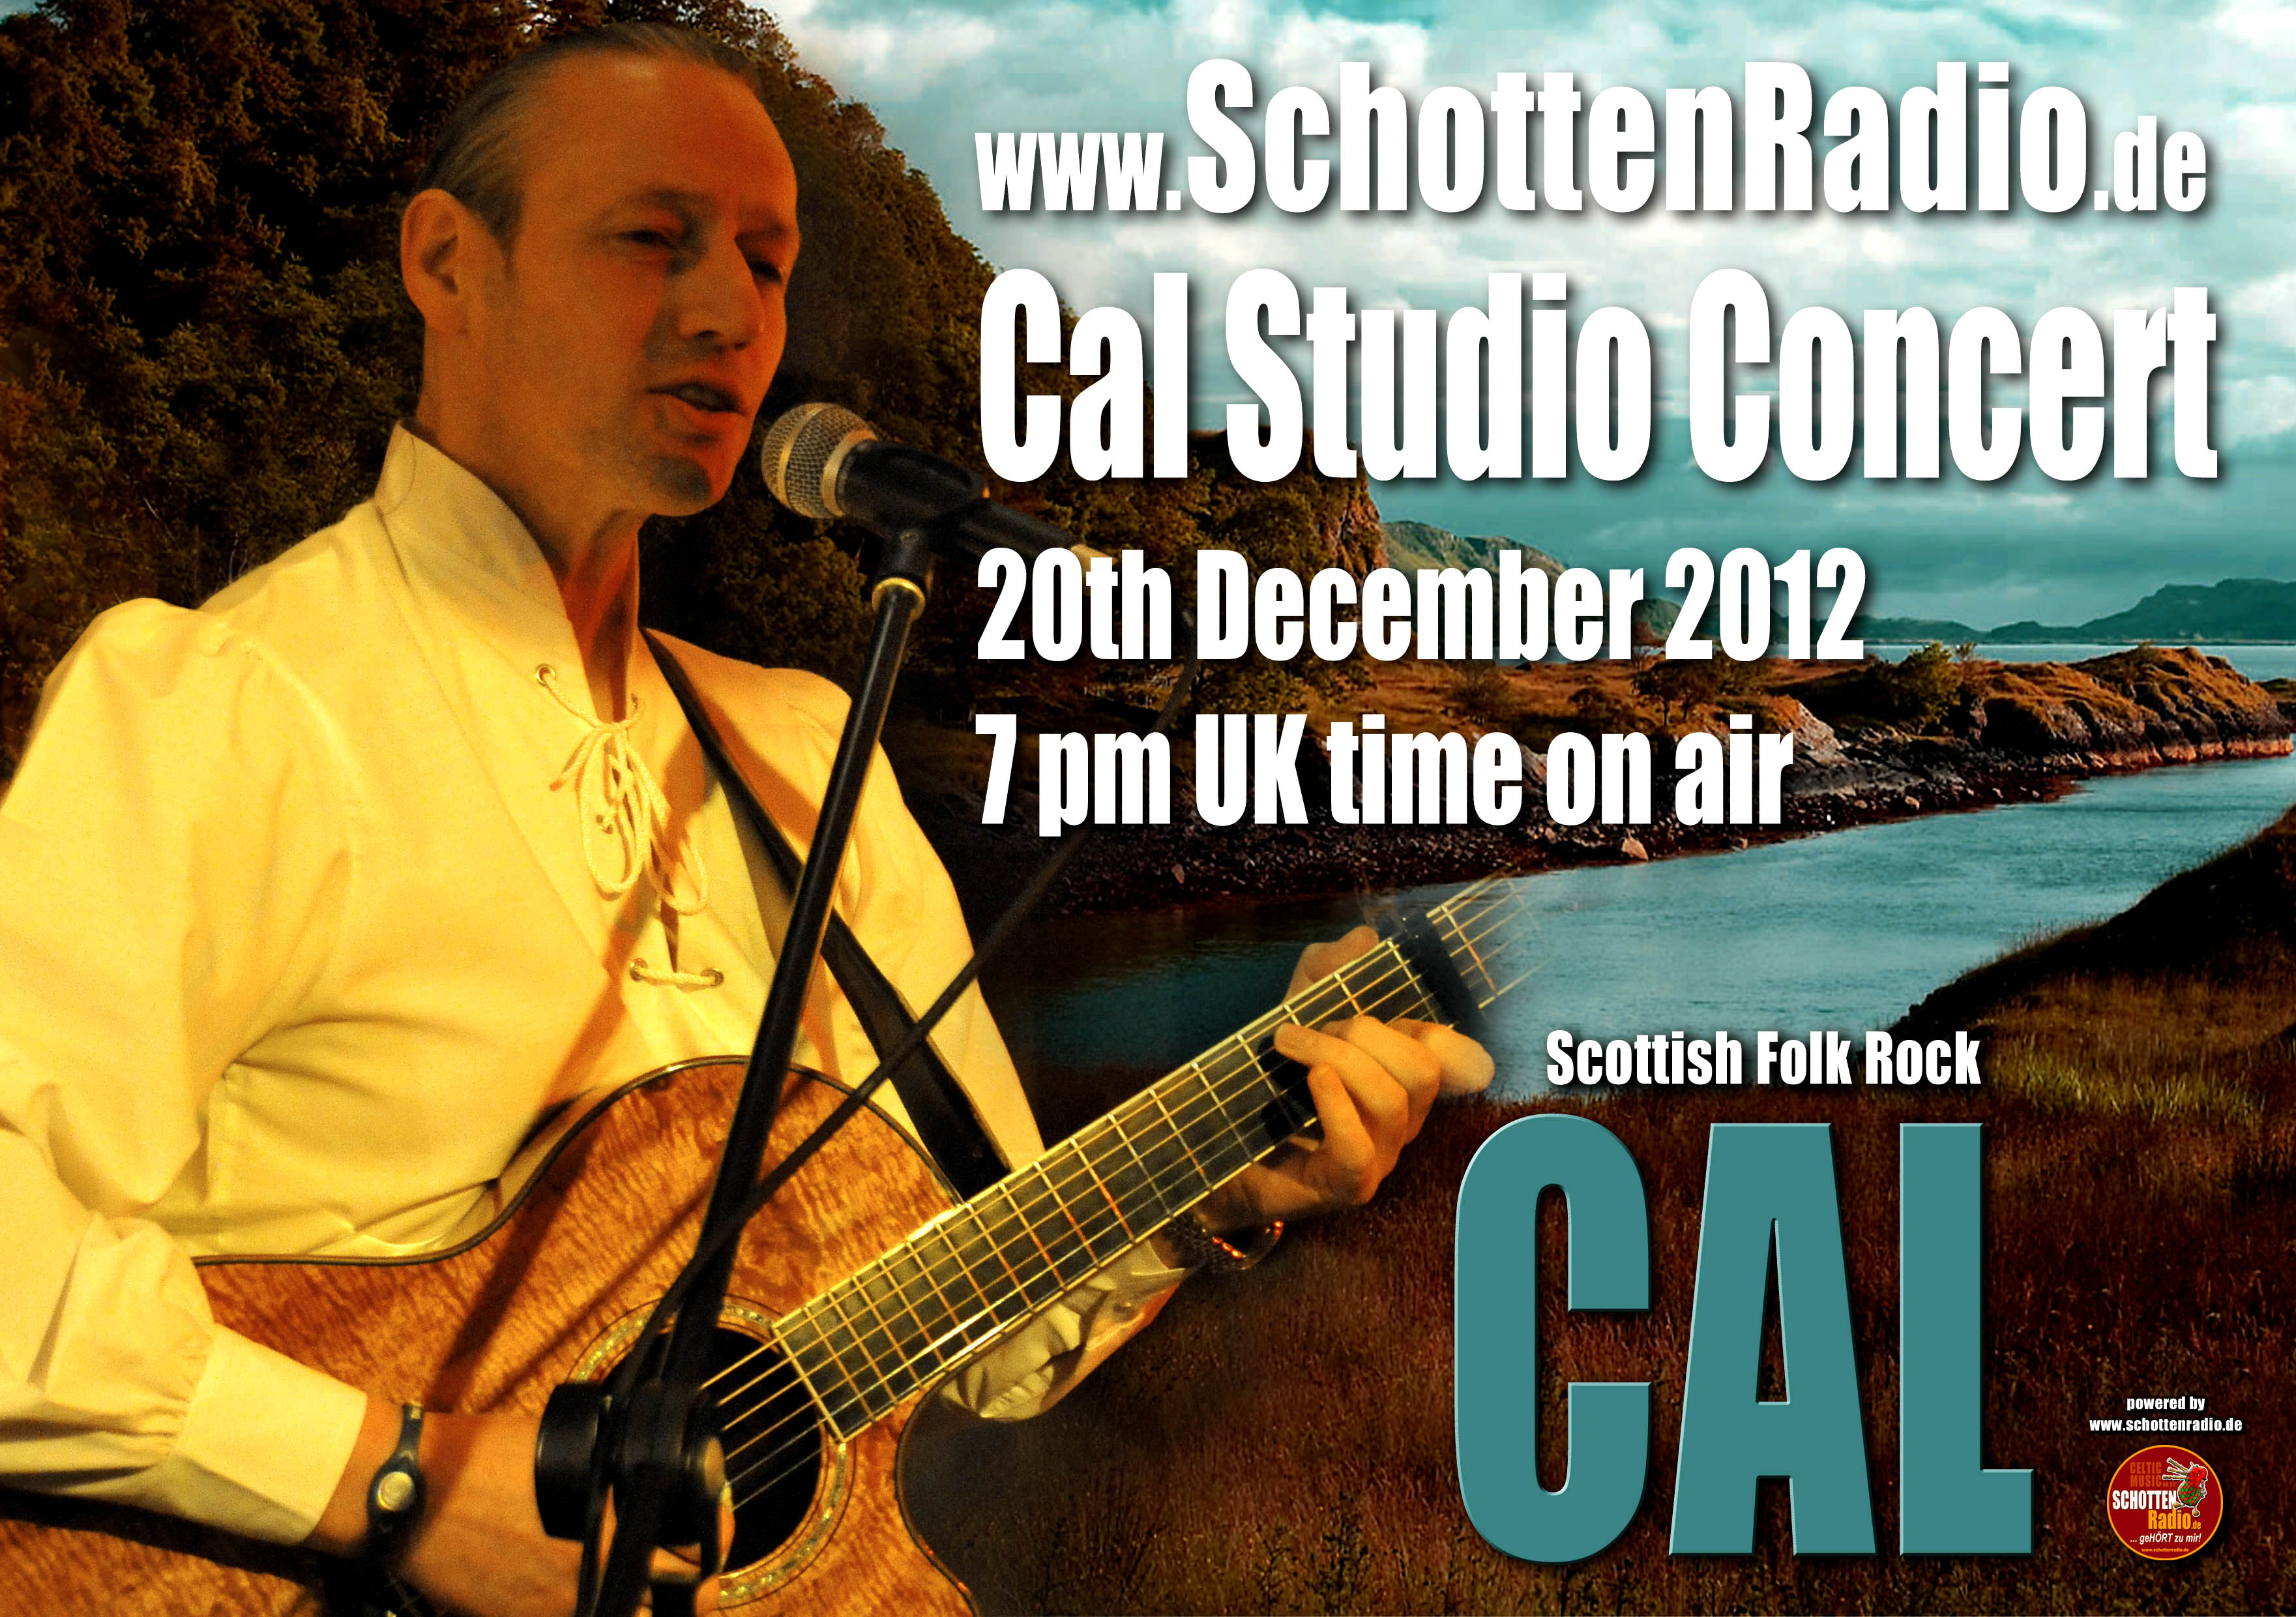 cal-schottenradio-concert-2012